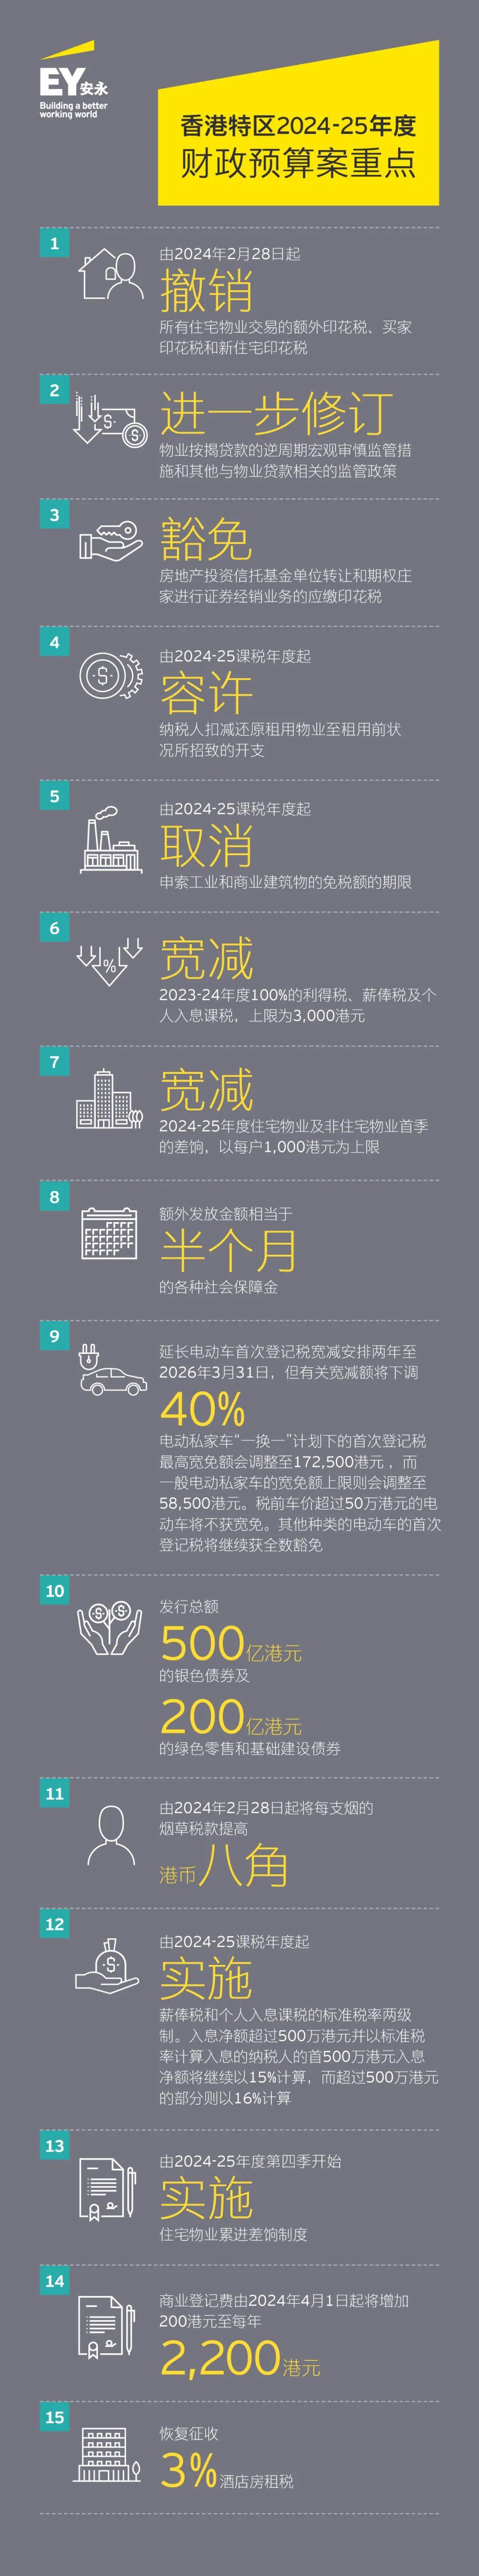 安永对香港特区2024 25年度财政预算案的看法 行业新闻 第5张